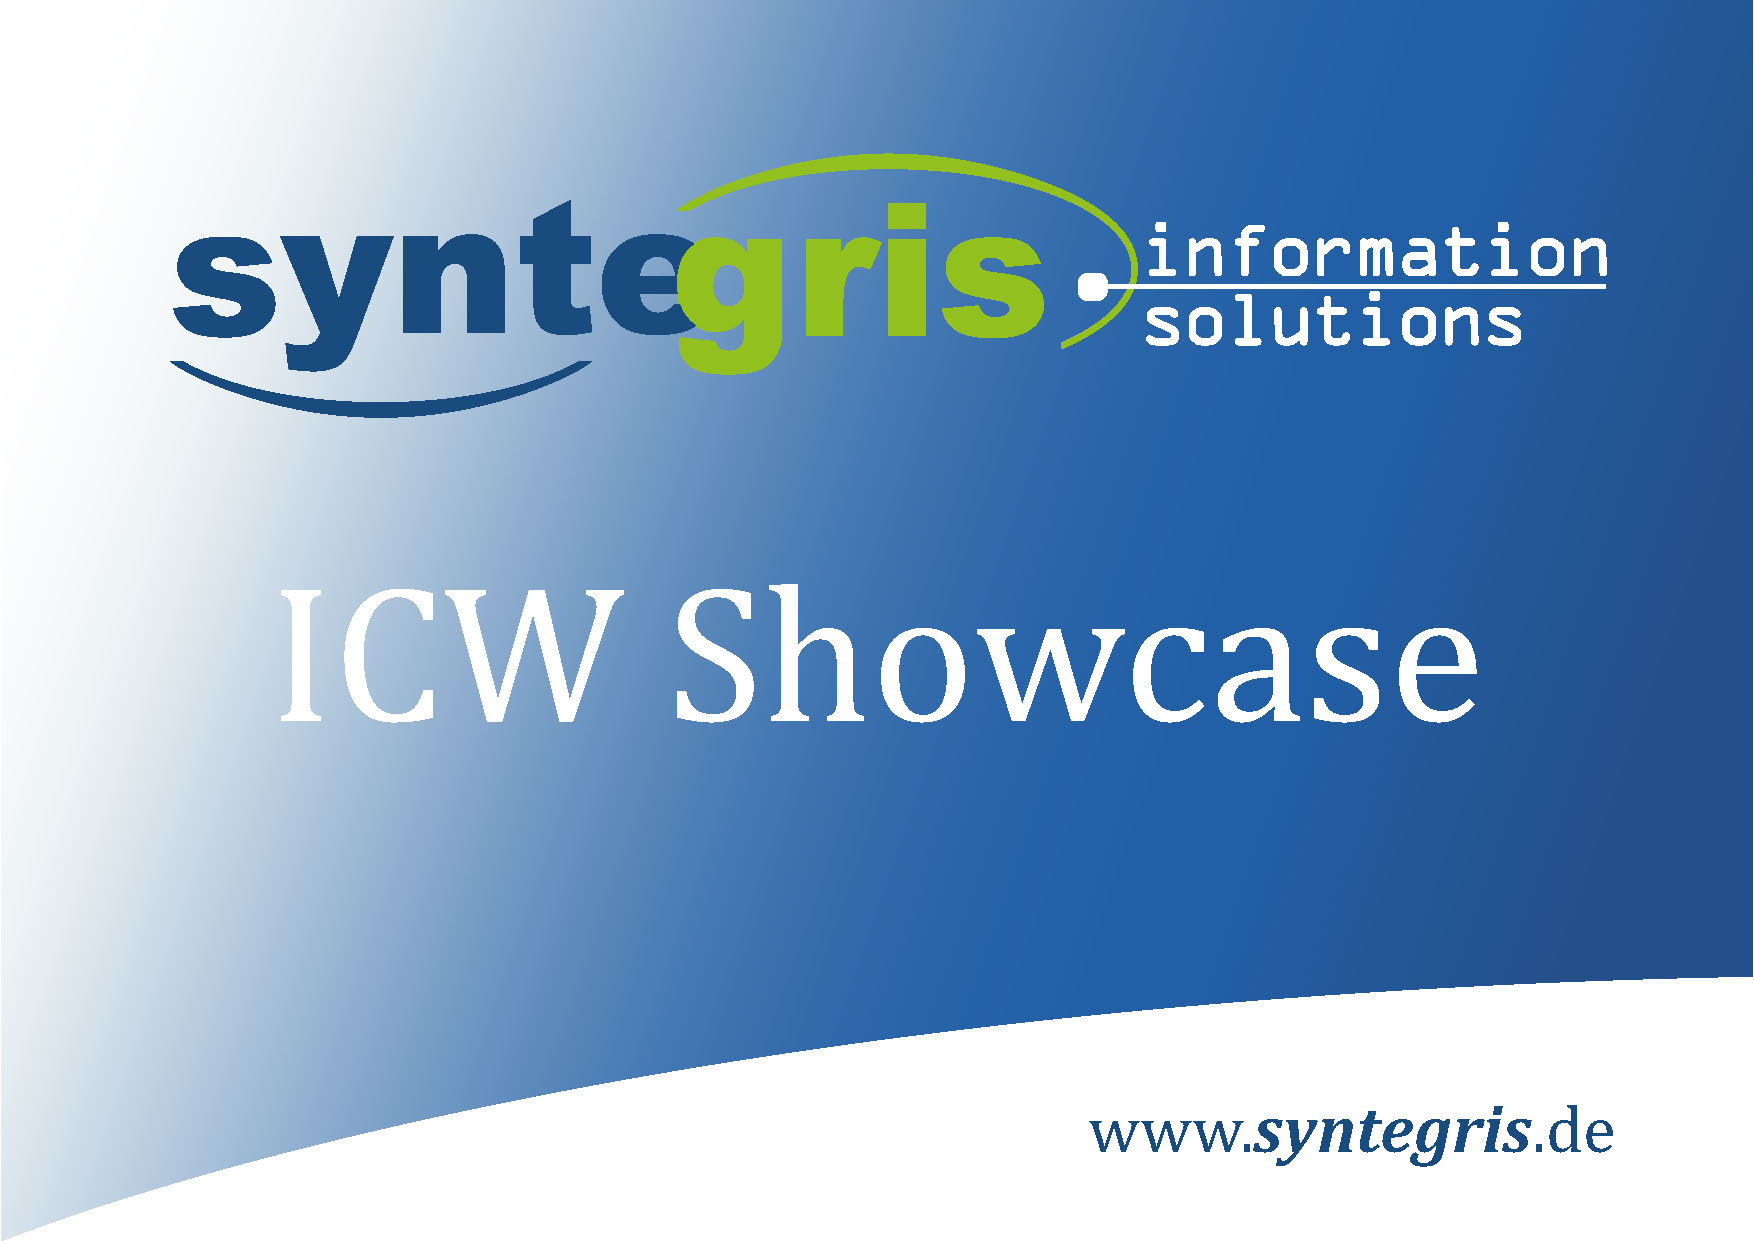 Syntegris ICW Showcase